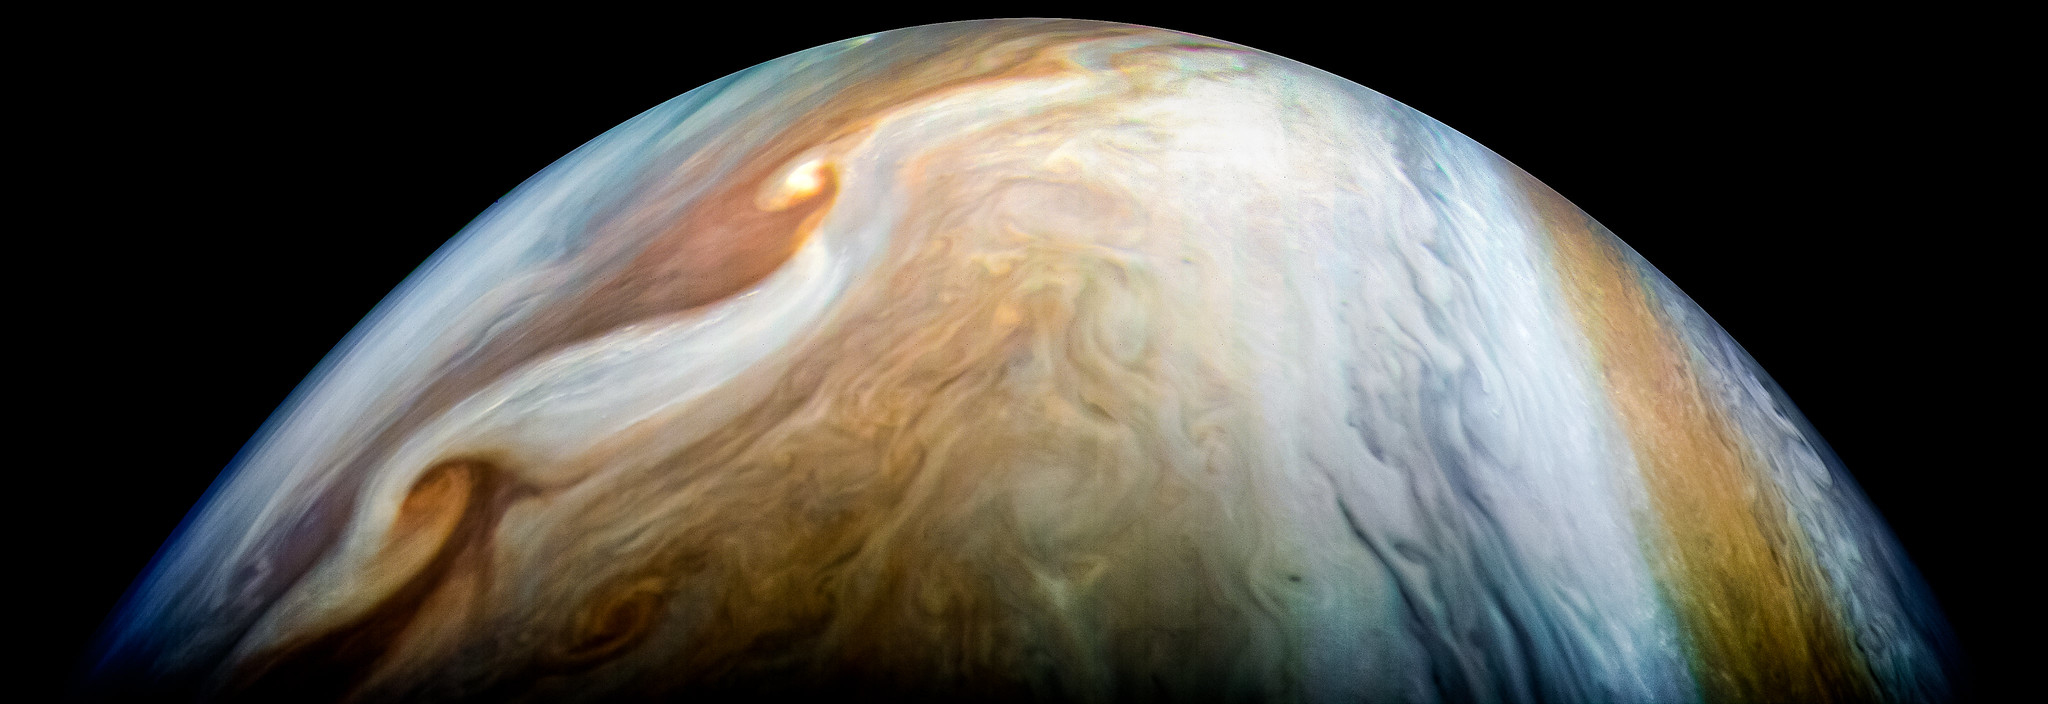 25 éves rejtélyt fejtett meg a Jupitert vizsgáló Juno űrszonda